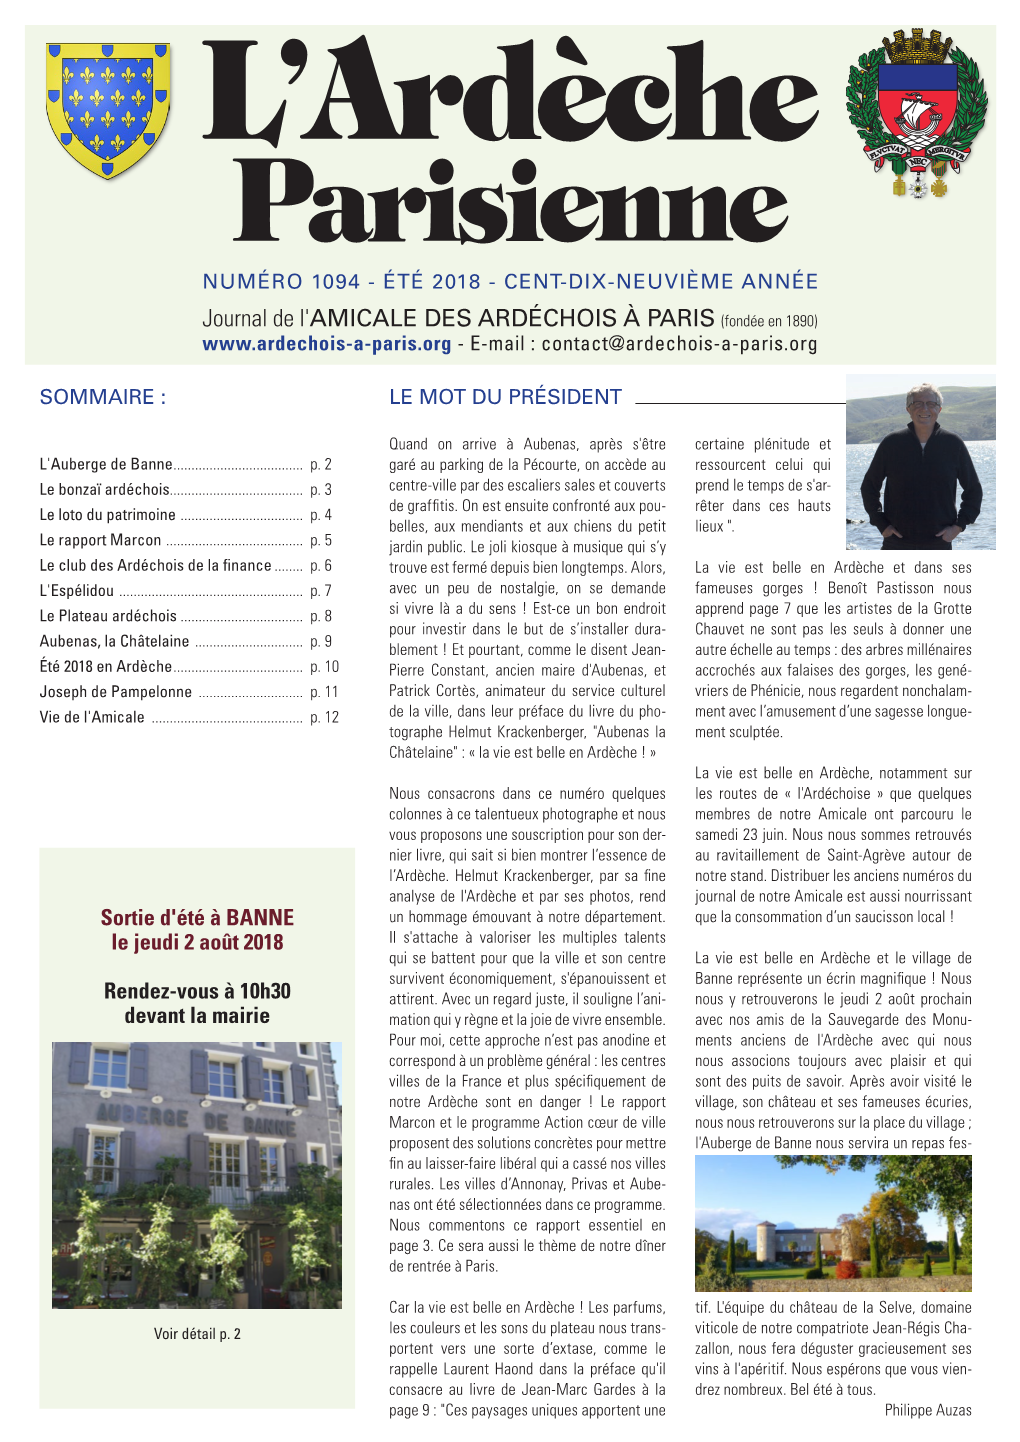 Journal De L'amicale DES ARDÉCHOIS À PARIS (Fondée En 1890) - E-Mail : Contact@Ardechois-A-Paris.Org